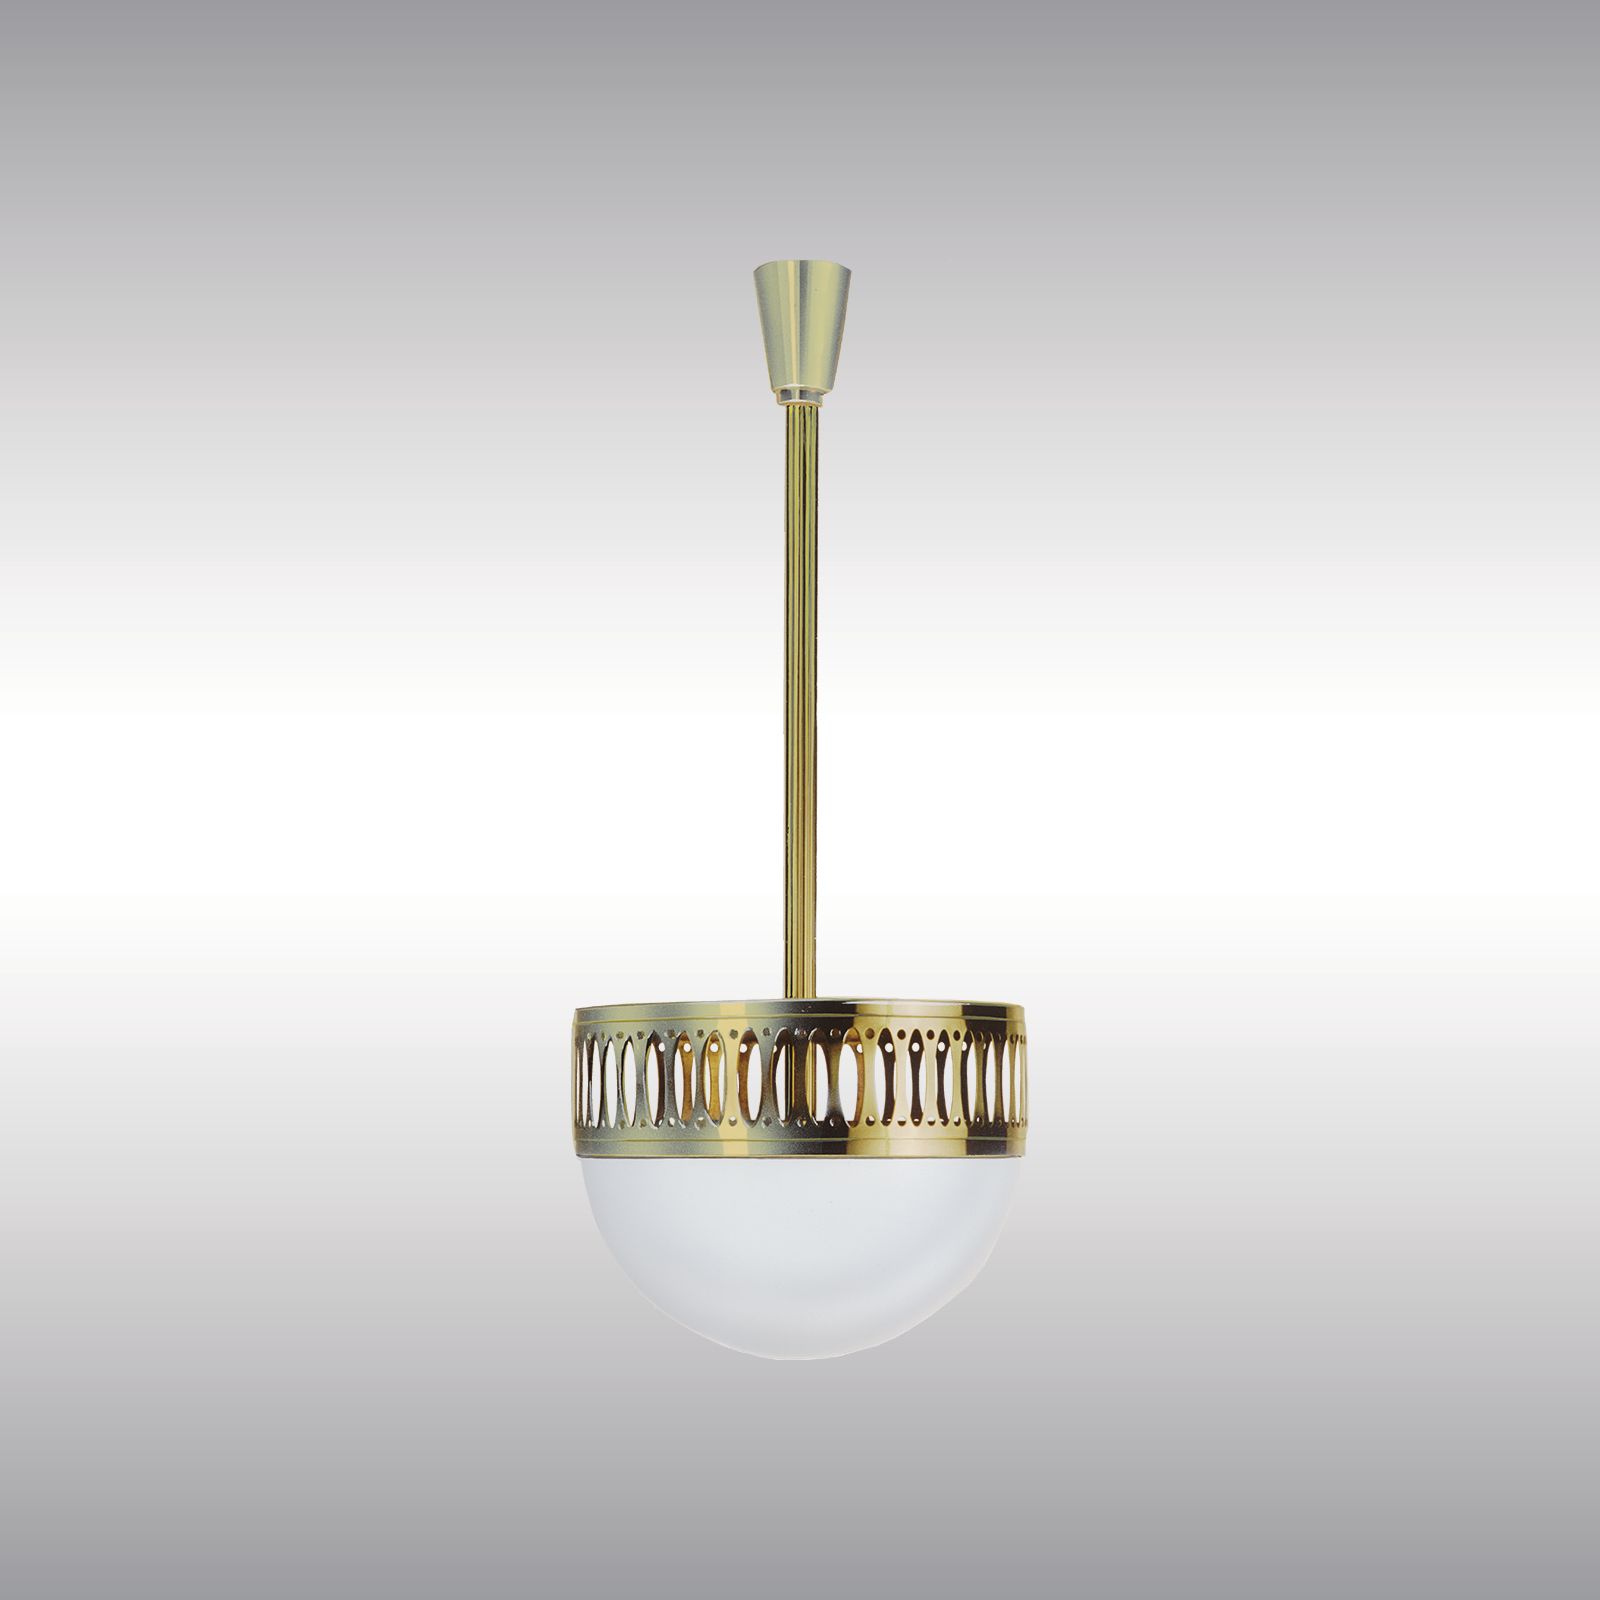 WOKA LAMPS VIENNA - OrderNr.: 9922|WW7/35ST - Design: Wiener Werkstaette